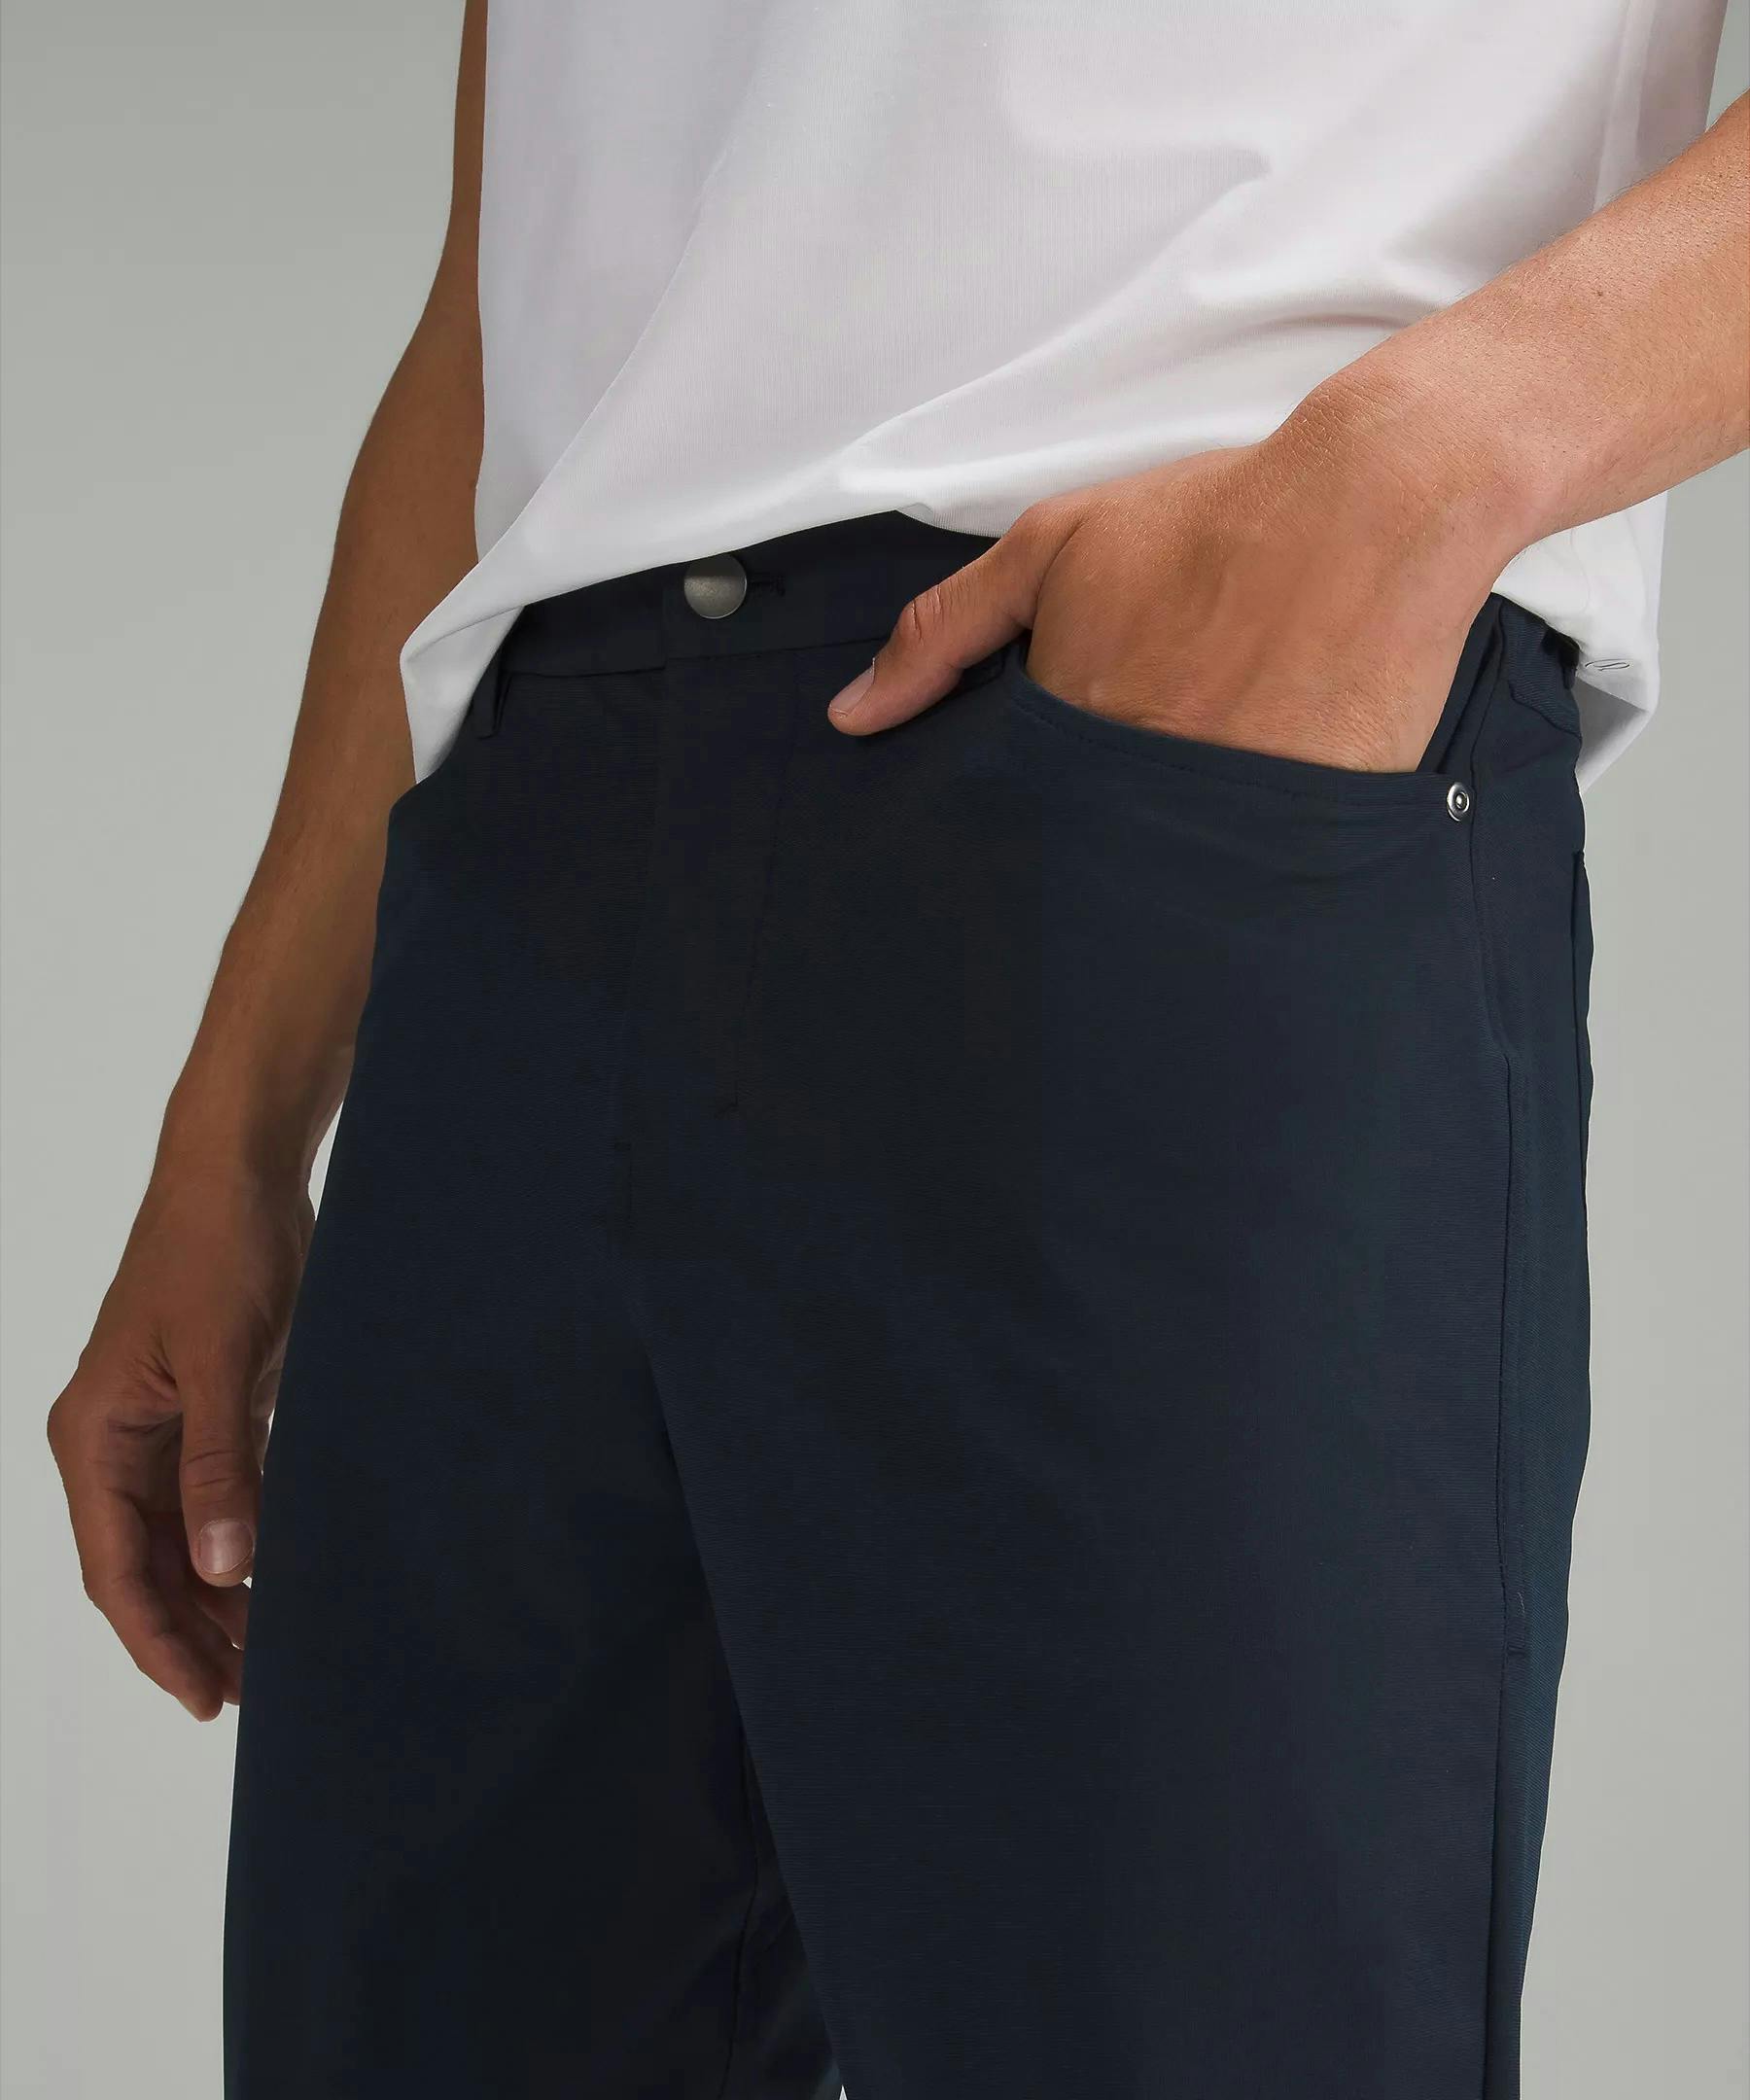 Lululemon ABC Slim Fit Pant 32”L Size 31x32 Color WHT NWT MSRP $128